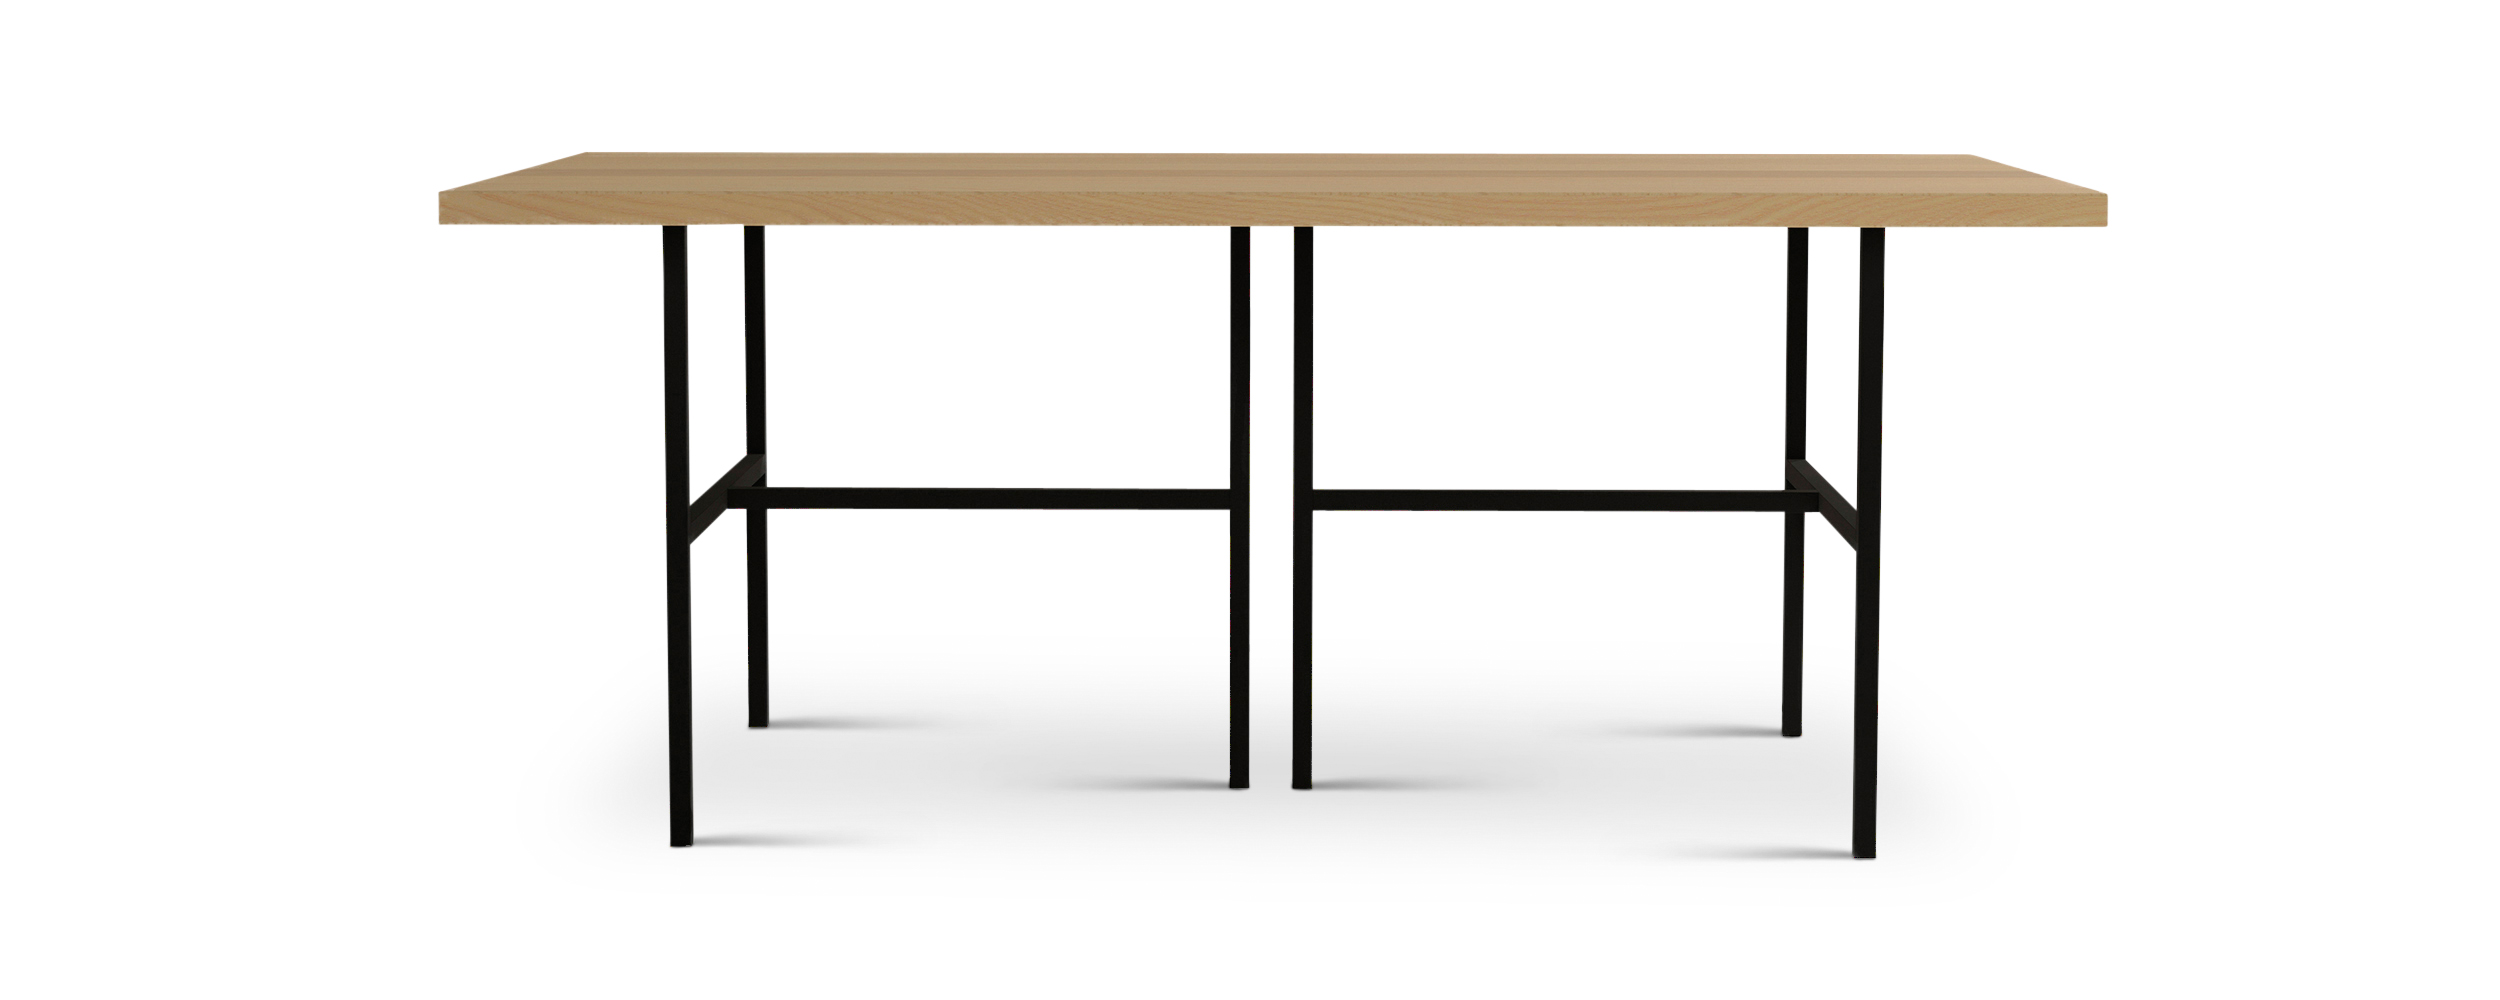 Series 828 black metal and wood table